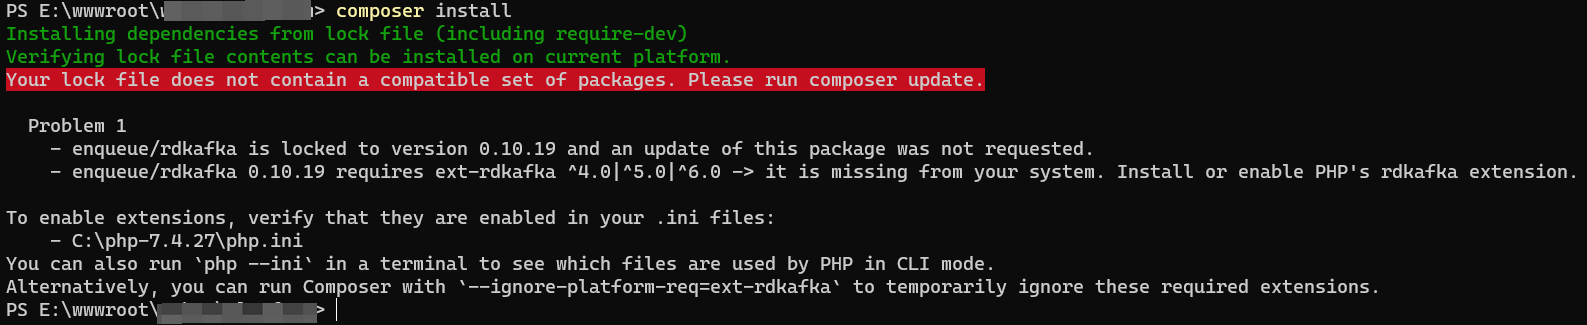 执行：composer install 时，提示：enqueue/rdkafka 0.10.19 requires ext-rdkafka -> it is missing from your system. Install or enable PHP's rdkafka extension.